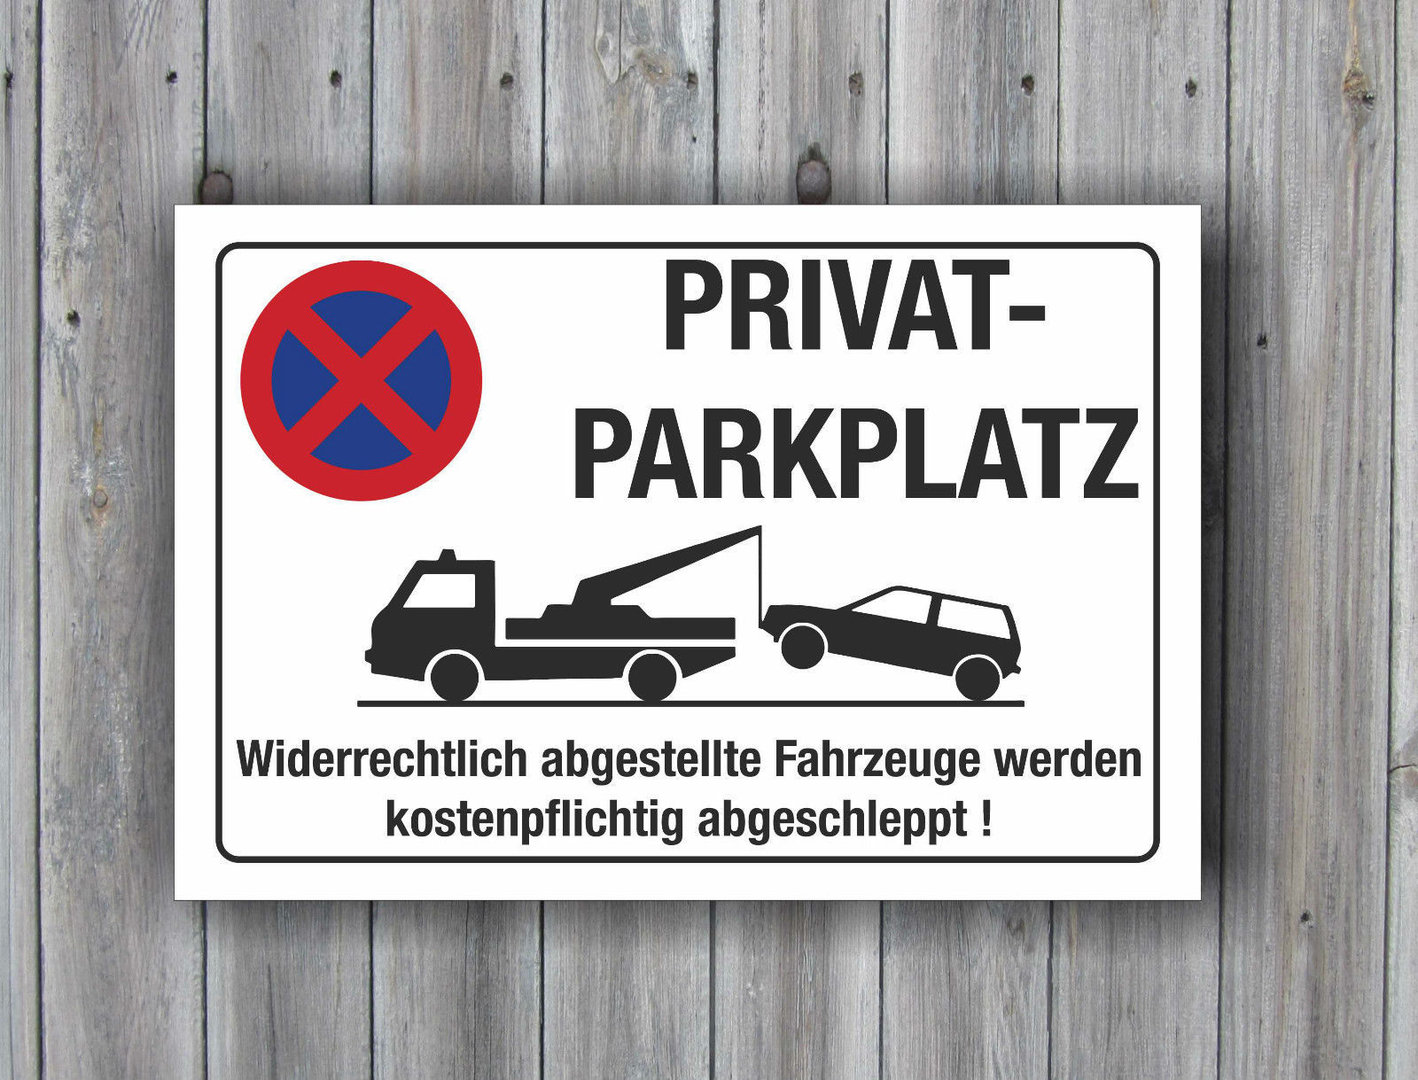 Schild Besucherparkplatz Parkplatz Besucher 3 mm Alu Verbund 